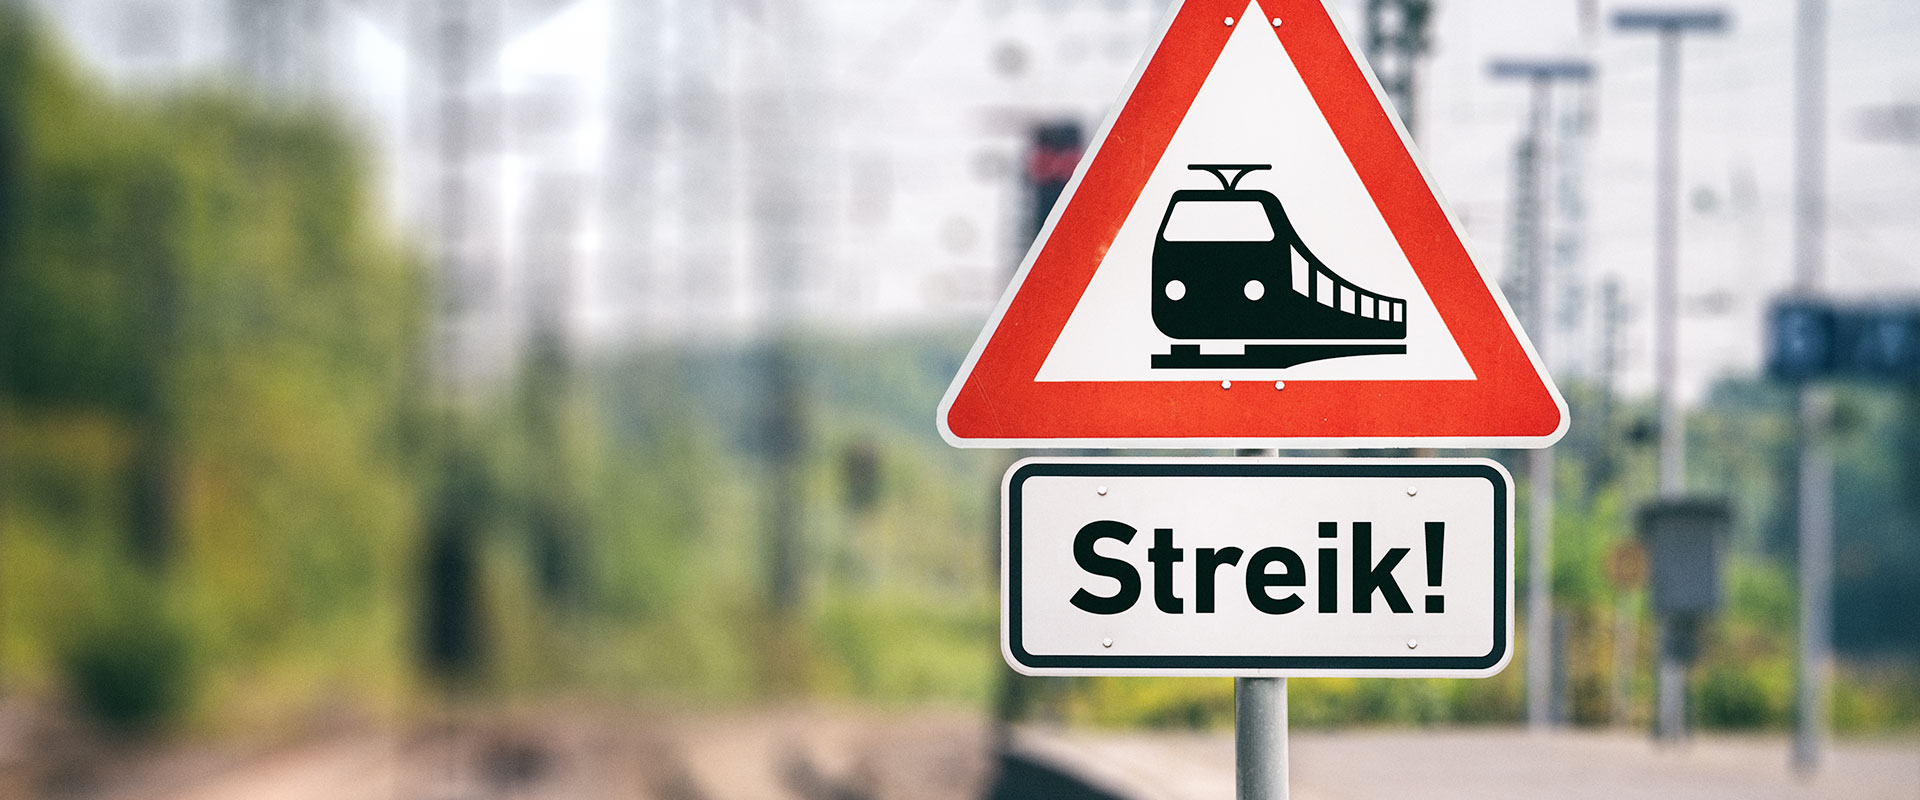 Zwei Schilder, eines mit dem Wort "Streik", eines zeigt einen Zug